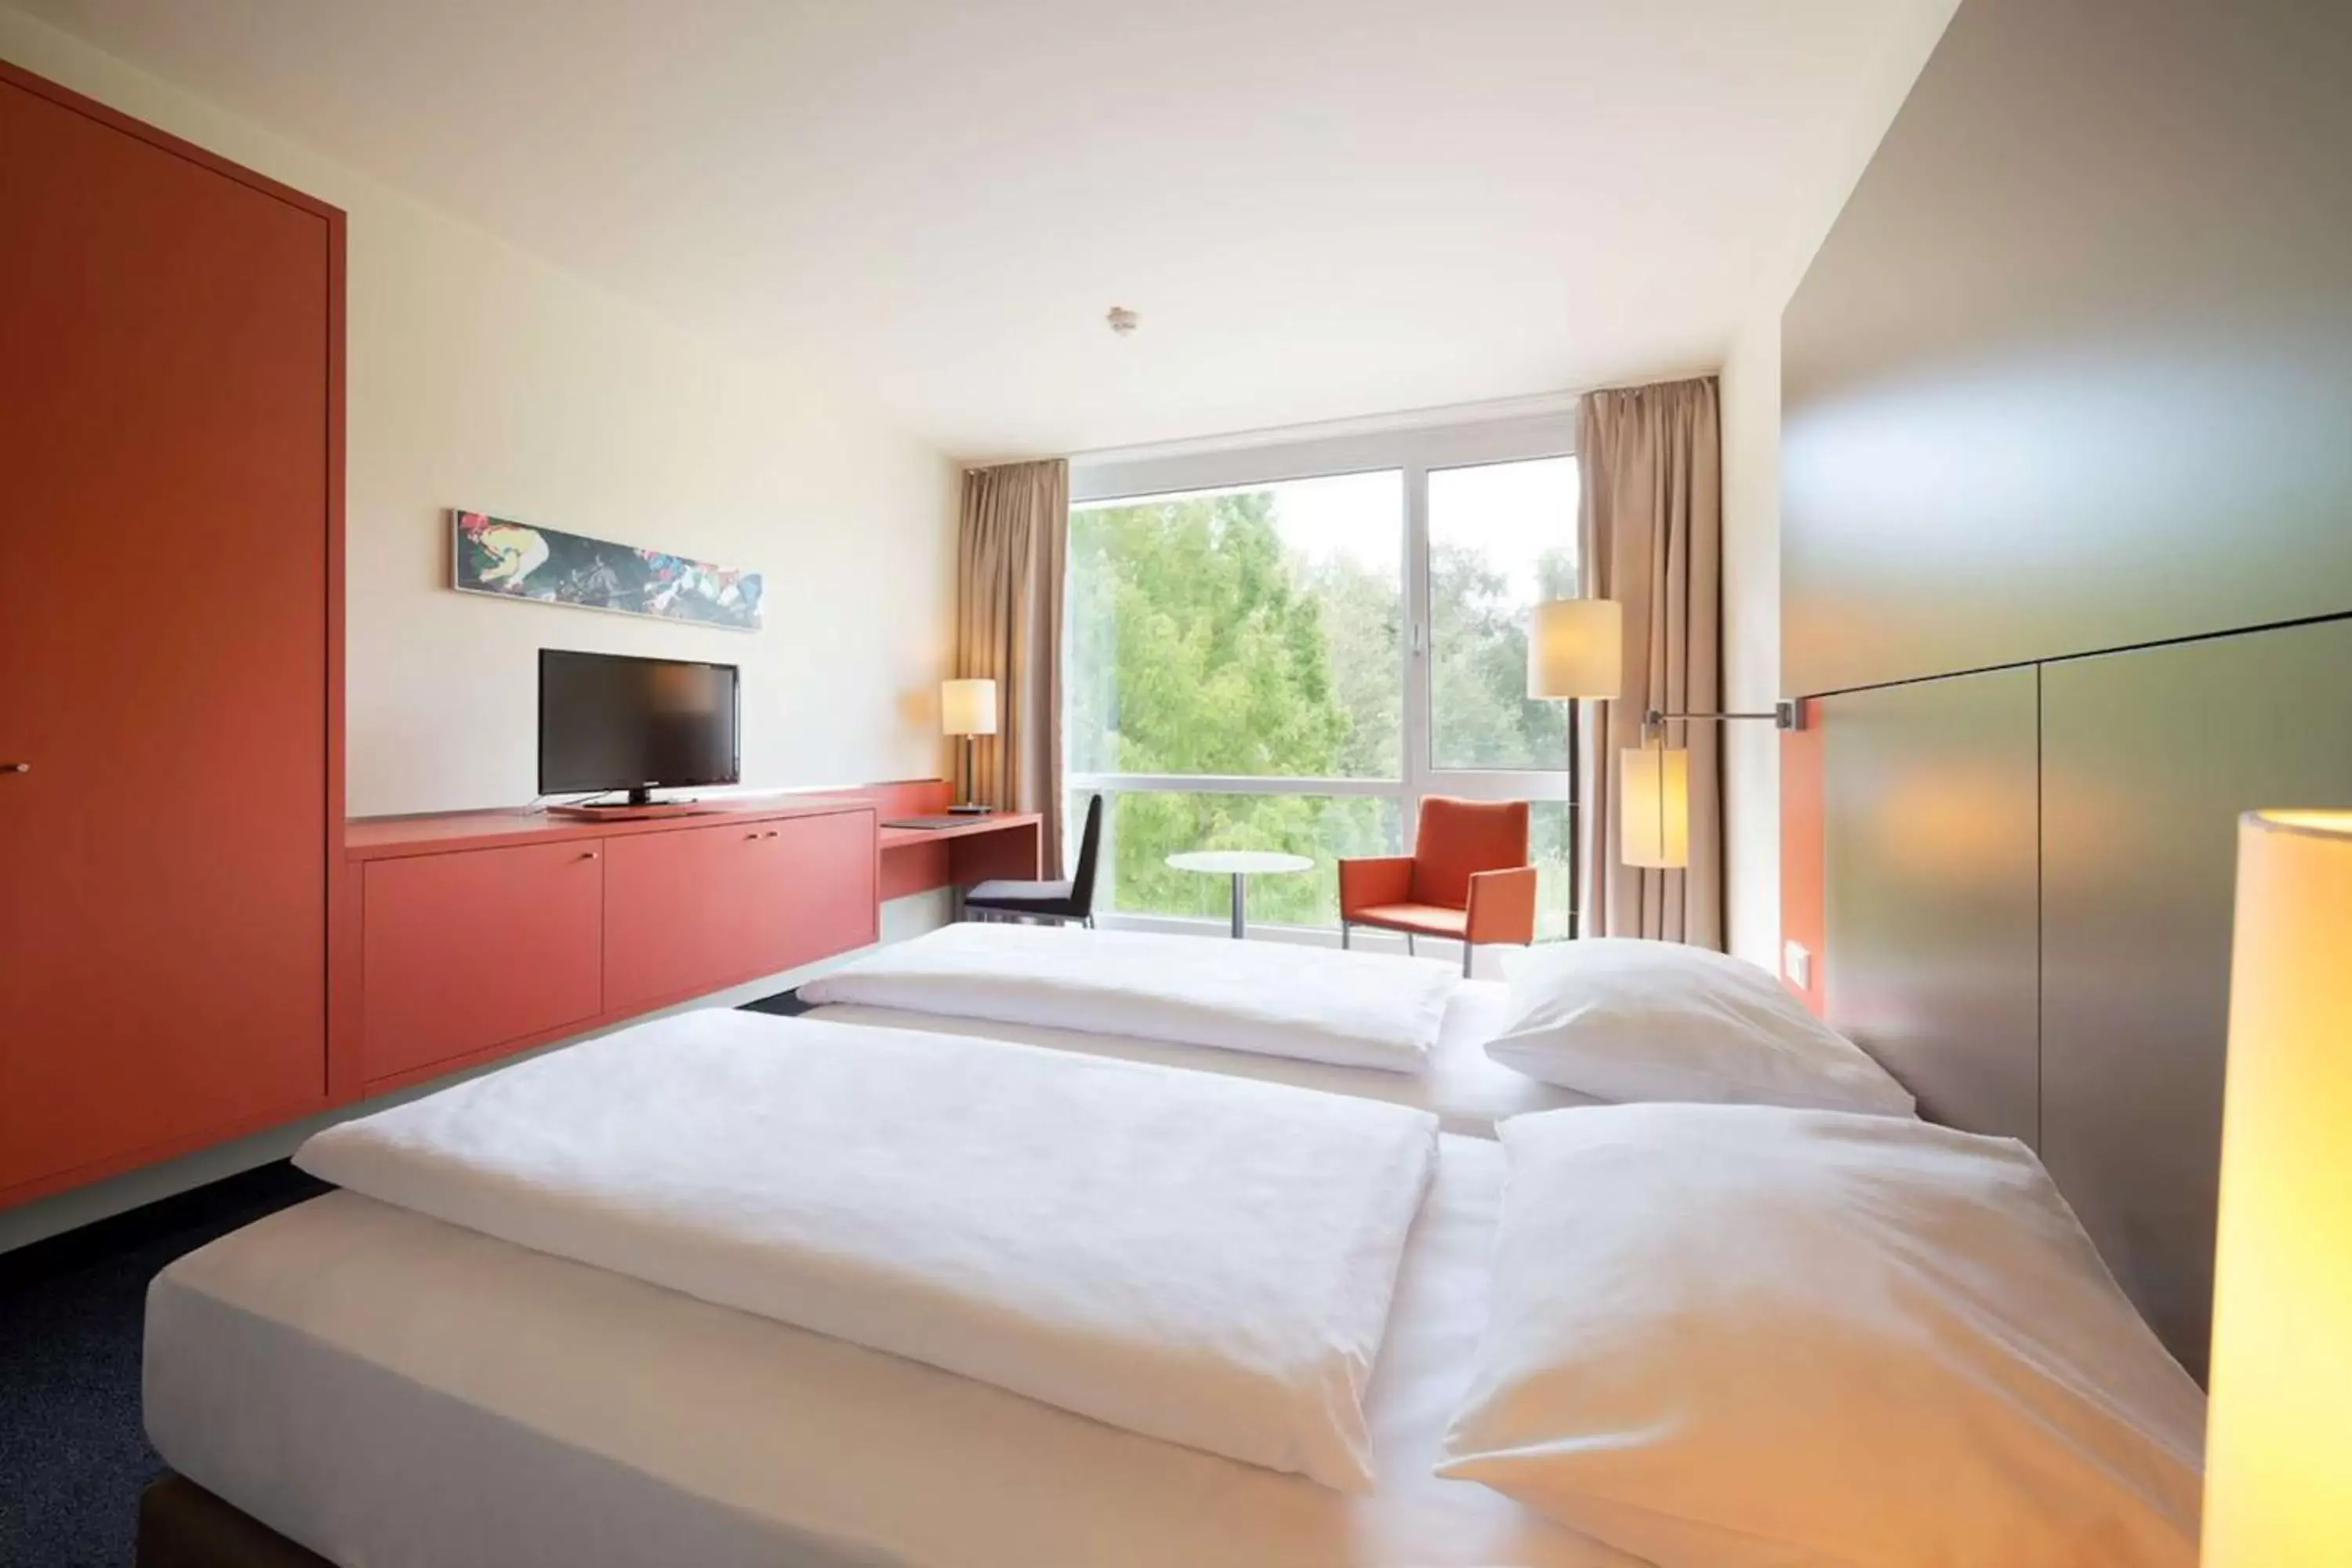 Bedroom, Bed in Atlantic Hotel Galopprennbahn